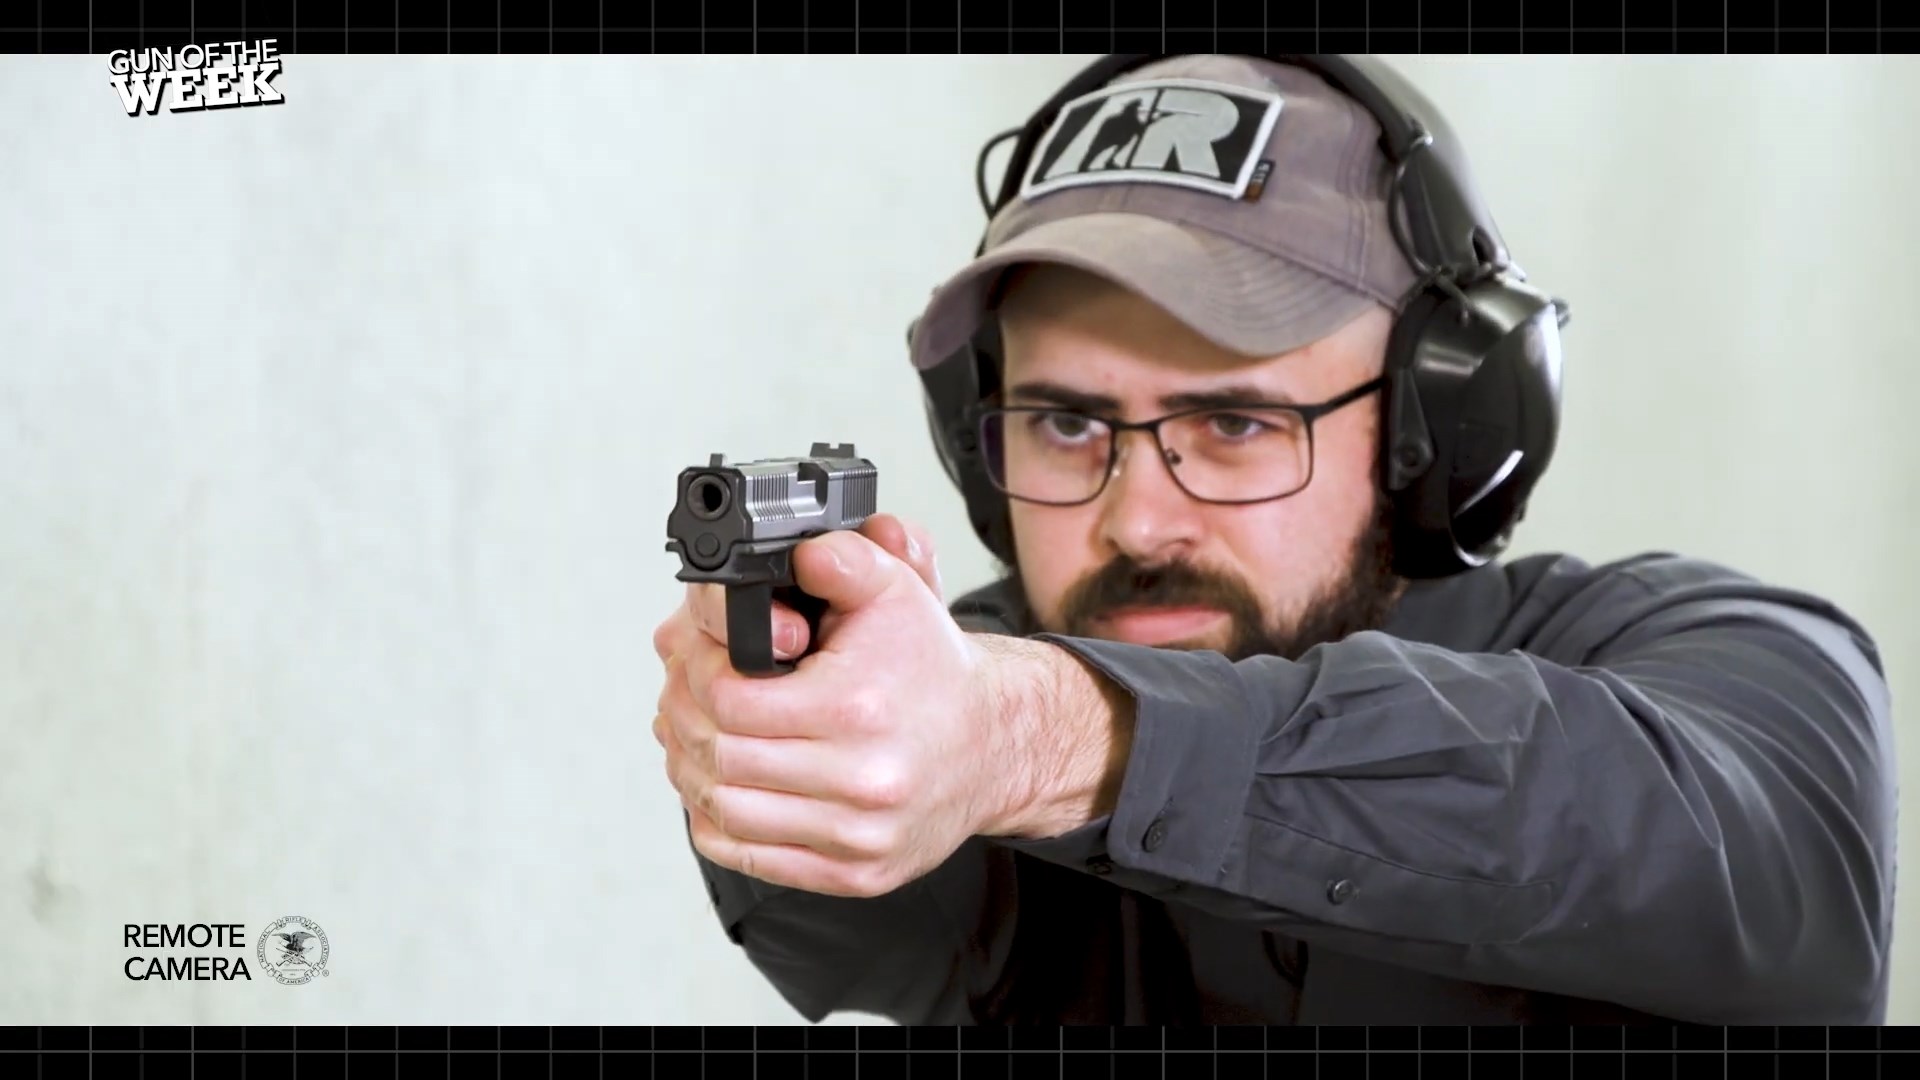 man on shooting range wearing protective gear shooting 9 mm FMK 9C1-G3 Elite pistol